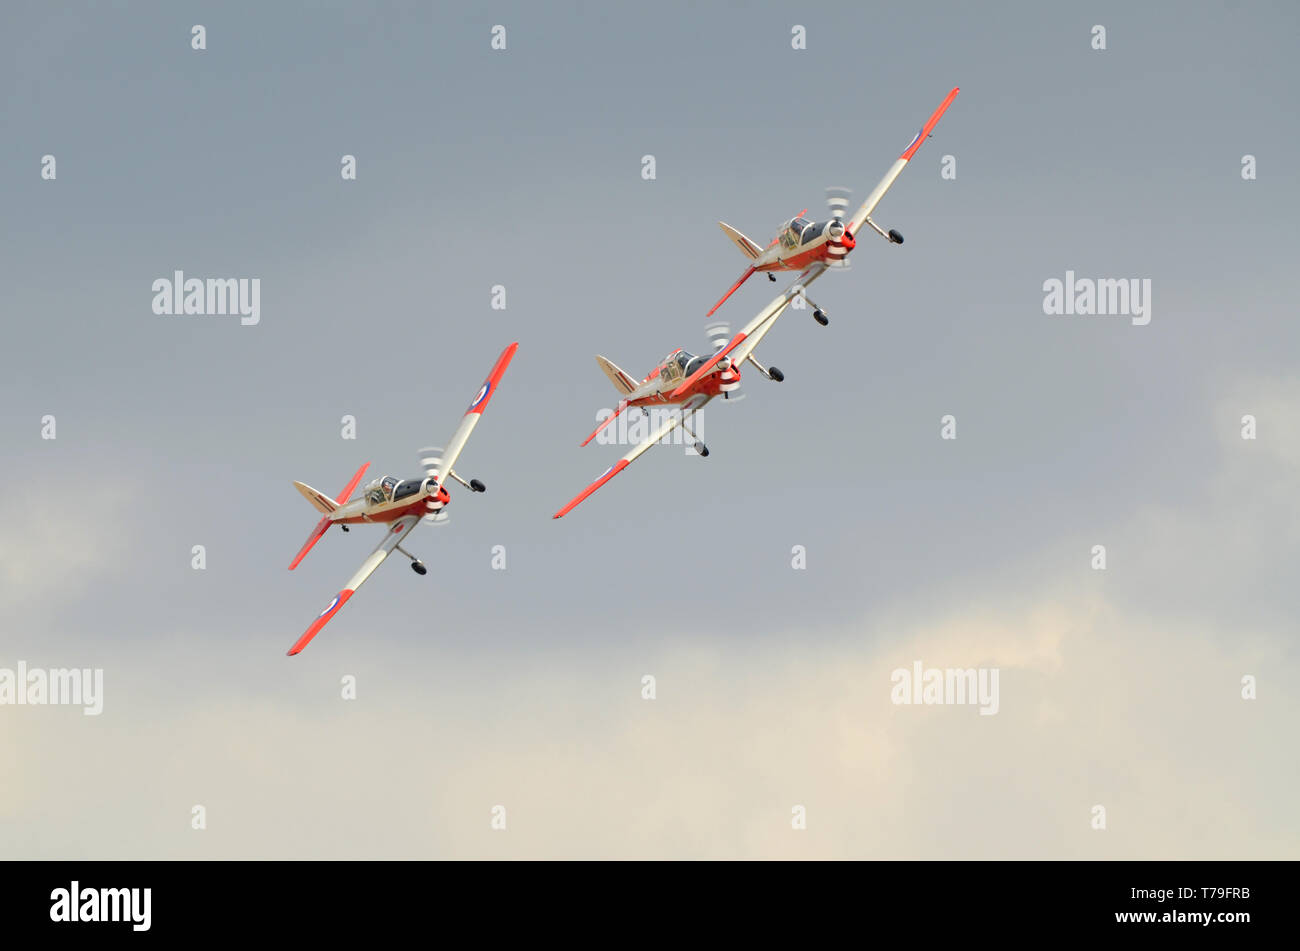 Red Spatzen, ein Air Display Team fliegen drei de Havilland Canada DHC-1 Chipmunk Flieger. Name ein Wortspiel auf RAF Red Arrows. Platz für Kopie Stockfoto